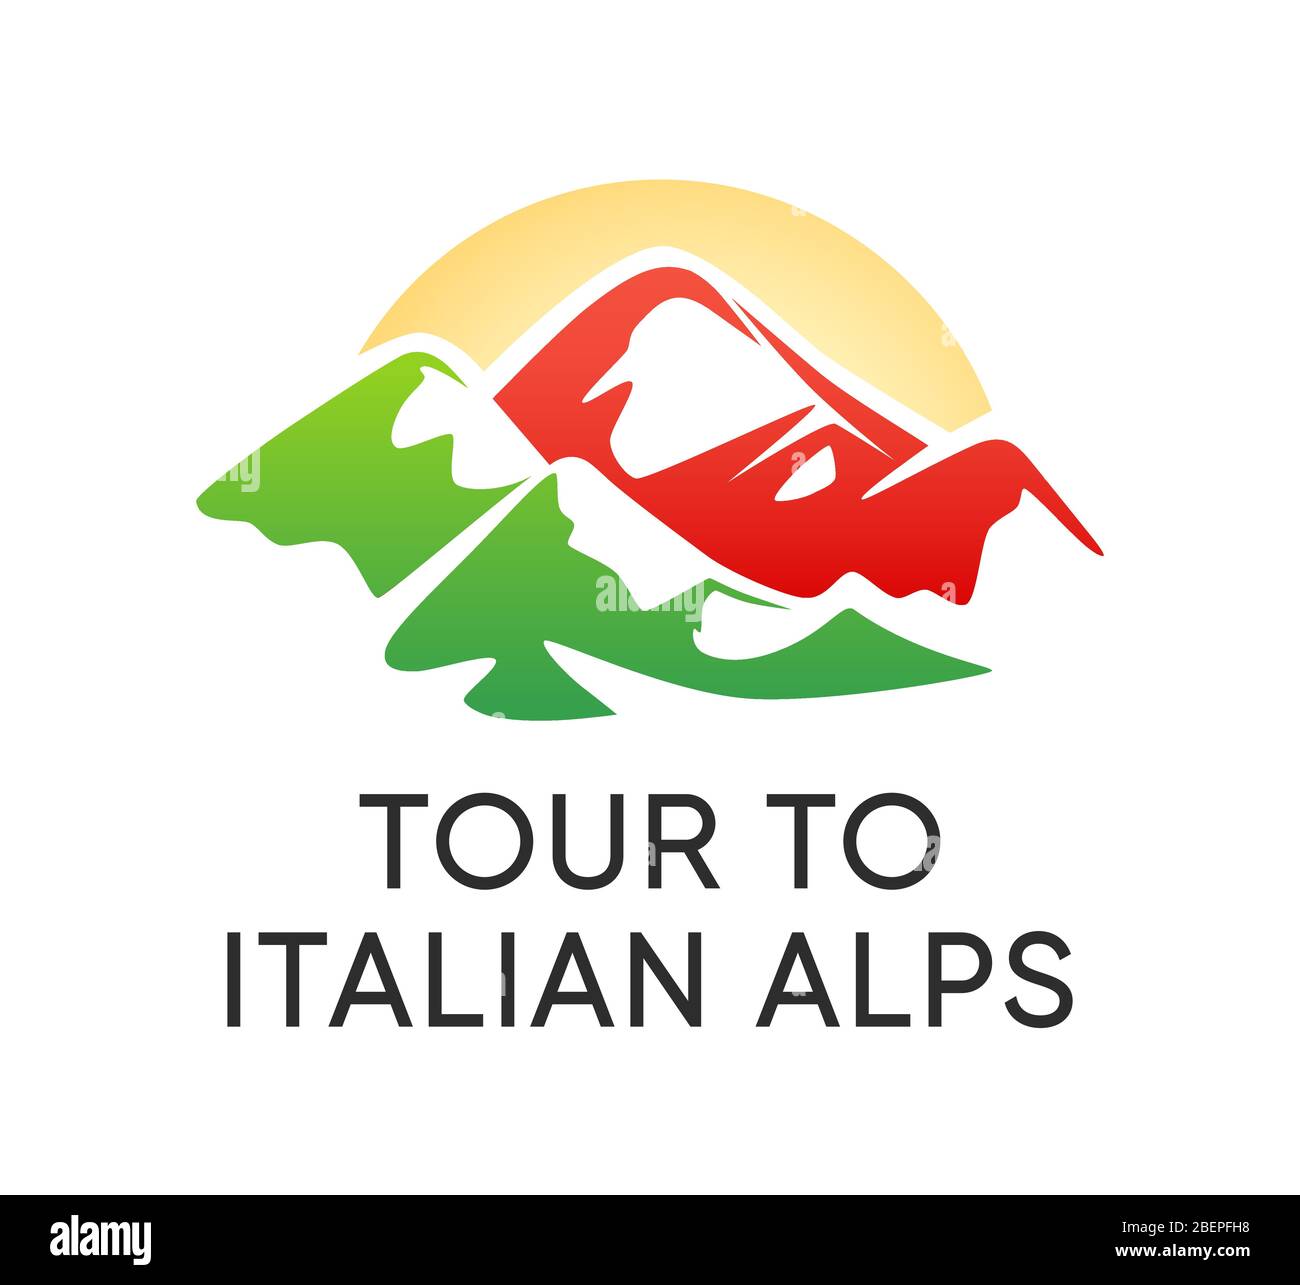 Alpes italiennes Emblem - logo pour une visite des montagnes alpines en Italie. Vector Sign avec montagnes dans les couleurs du drapeau national italien sur fond blanc Illustration de Vecteur